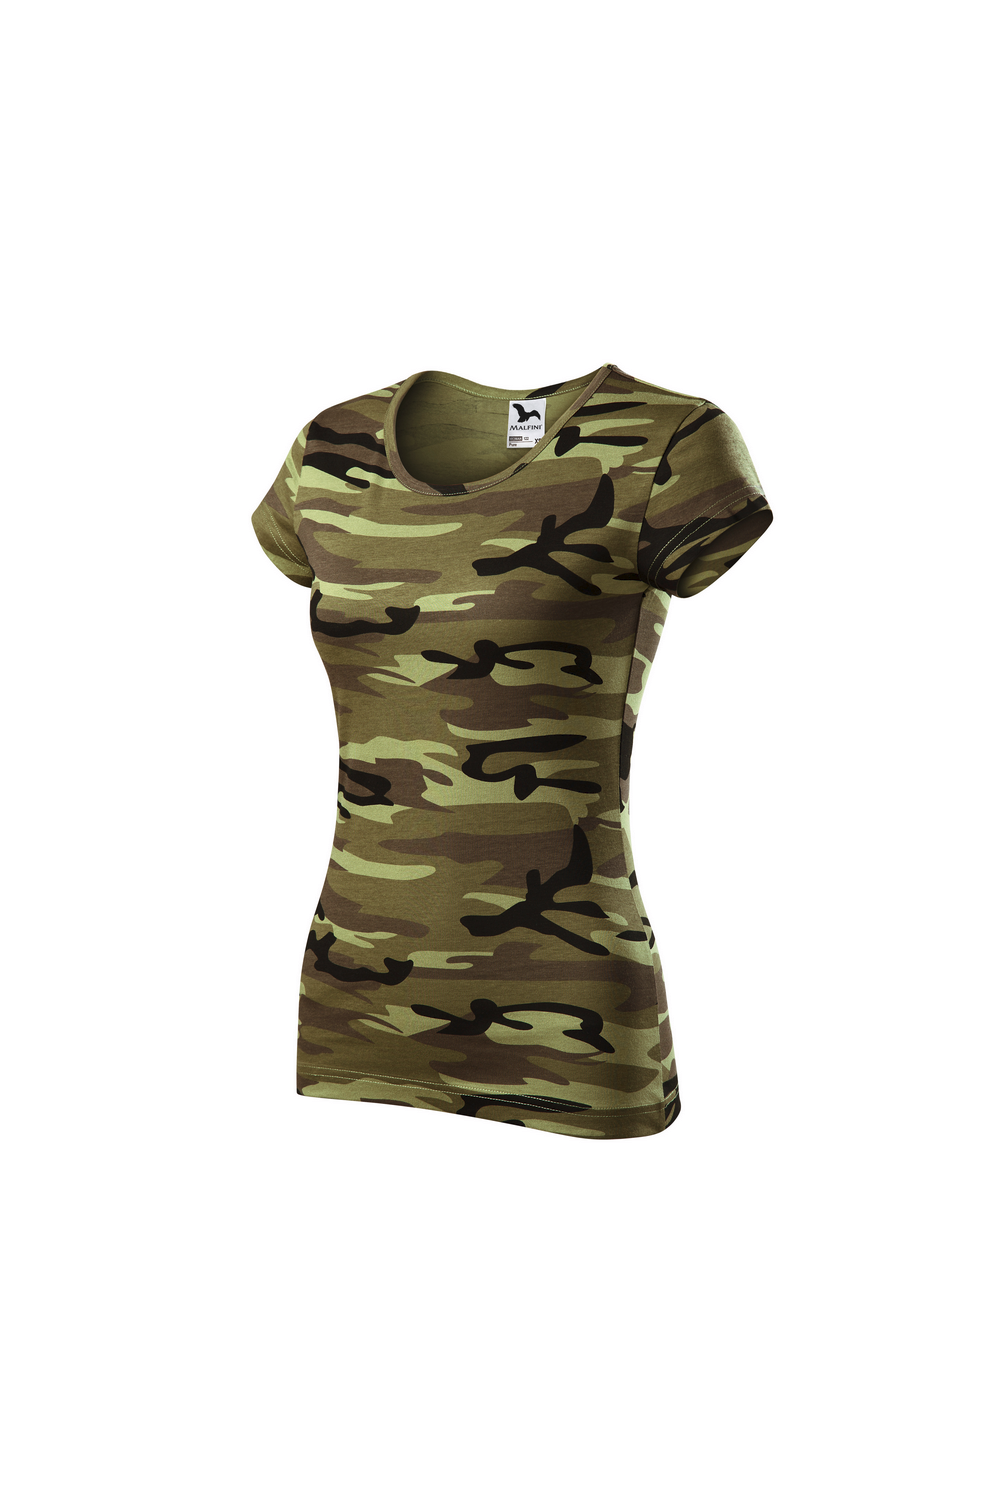 CAMO PURE C22 MALFINI Koszulka damska 100% bawełna t-shirt camouflage green